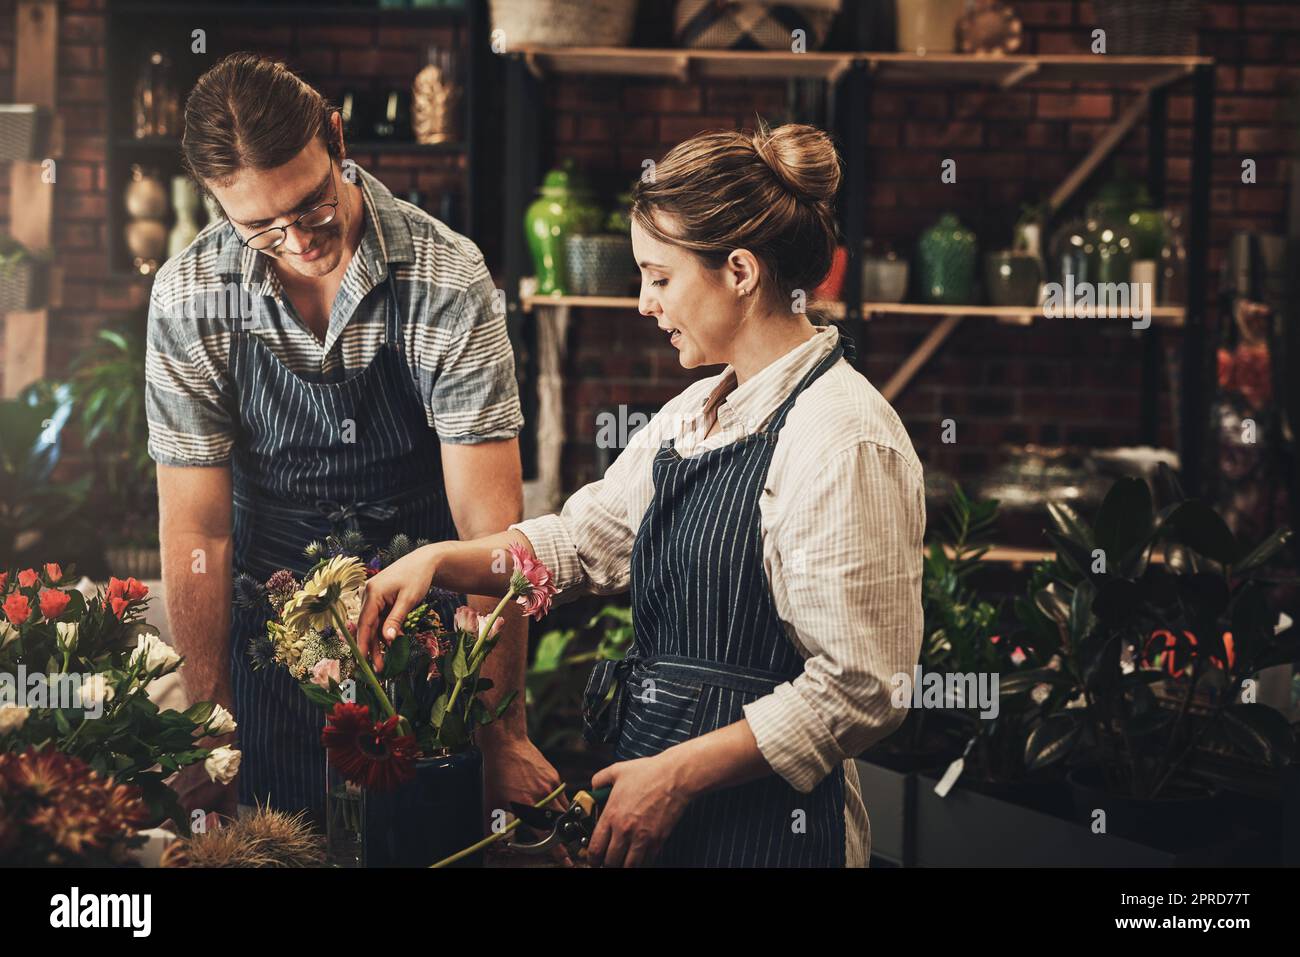 Unser kleines Unternehmen blüht. Zwei junge Floristen schneiden Blumen und arbeiten zusammen in ihrer Pflanzenkinderstube. Stockfoto